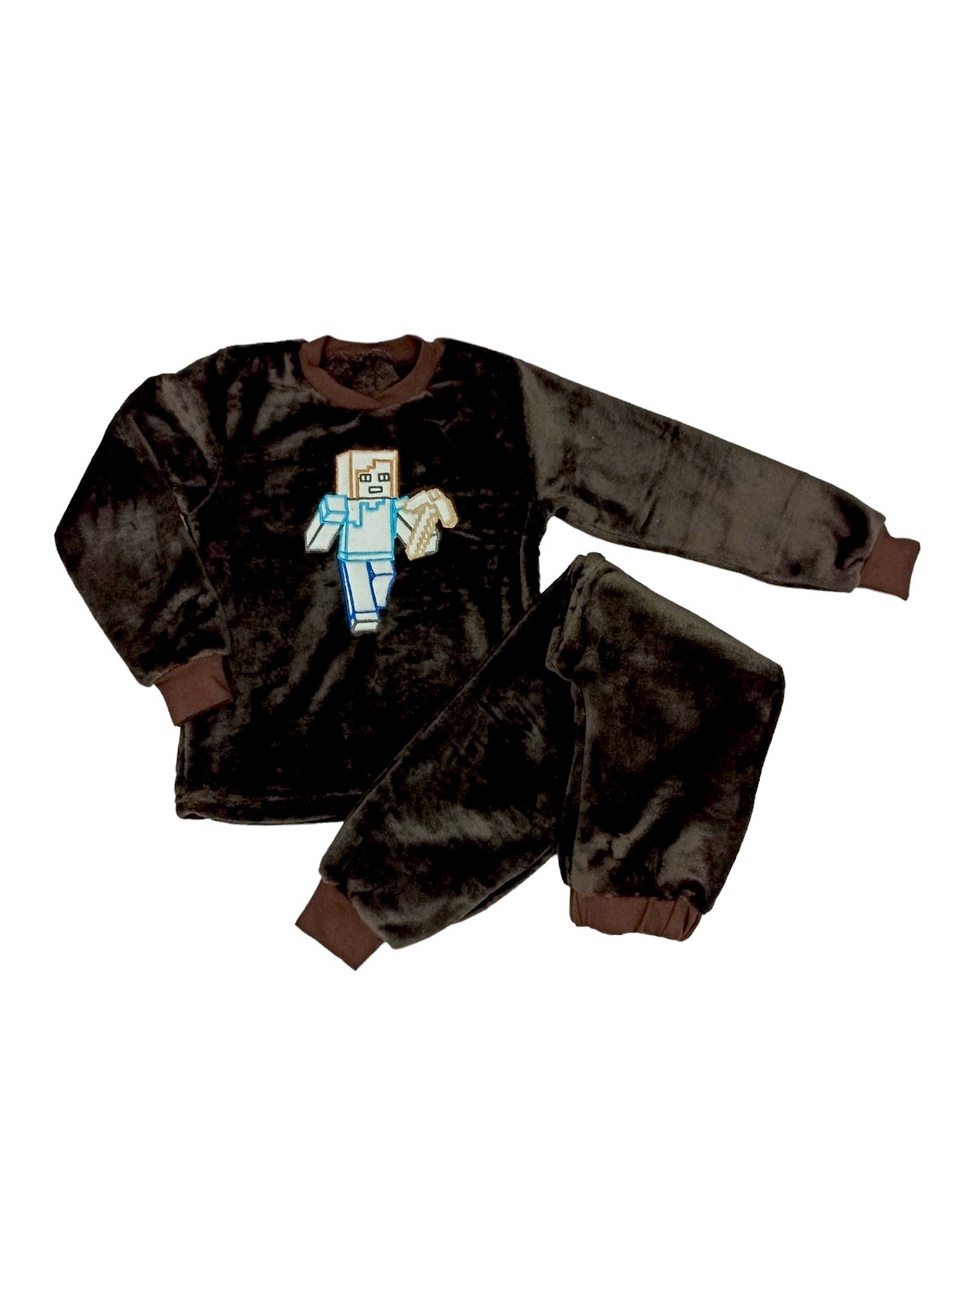 Детские трикотажные пижамы для мальчика. Пижама с вышивкой подростковая коричневого цвета. ТМ «Пташка Украина»